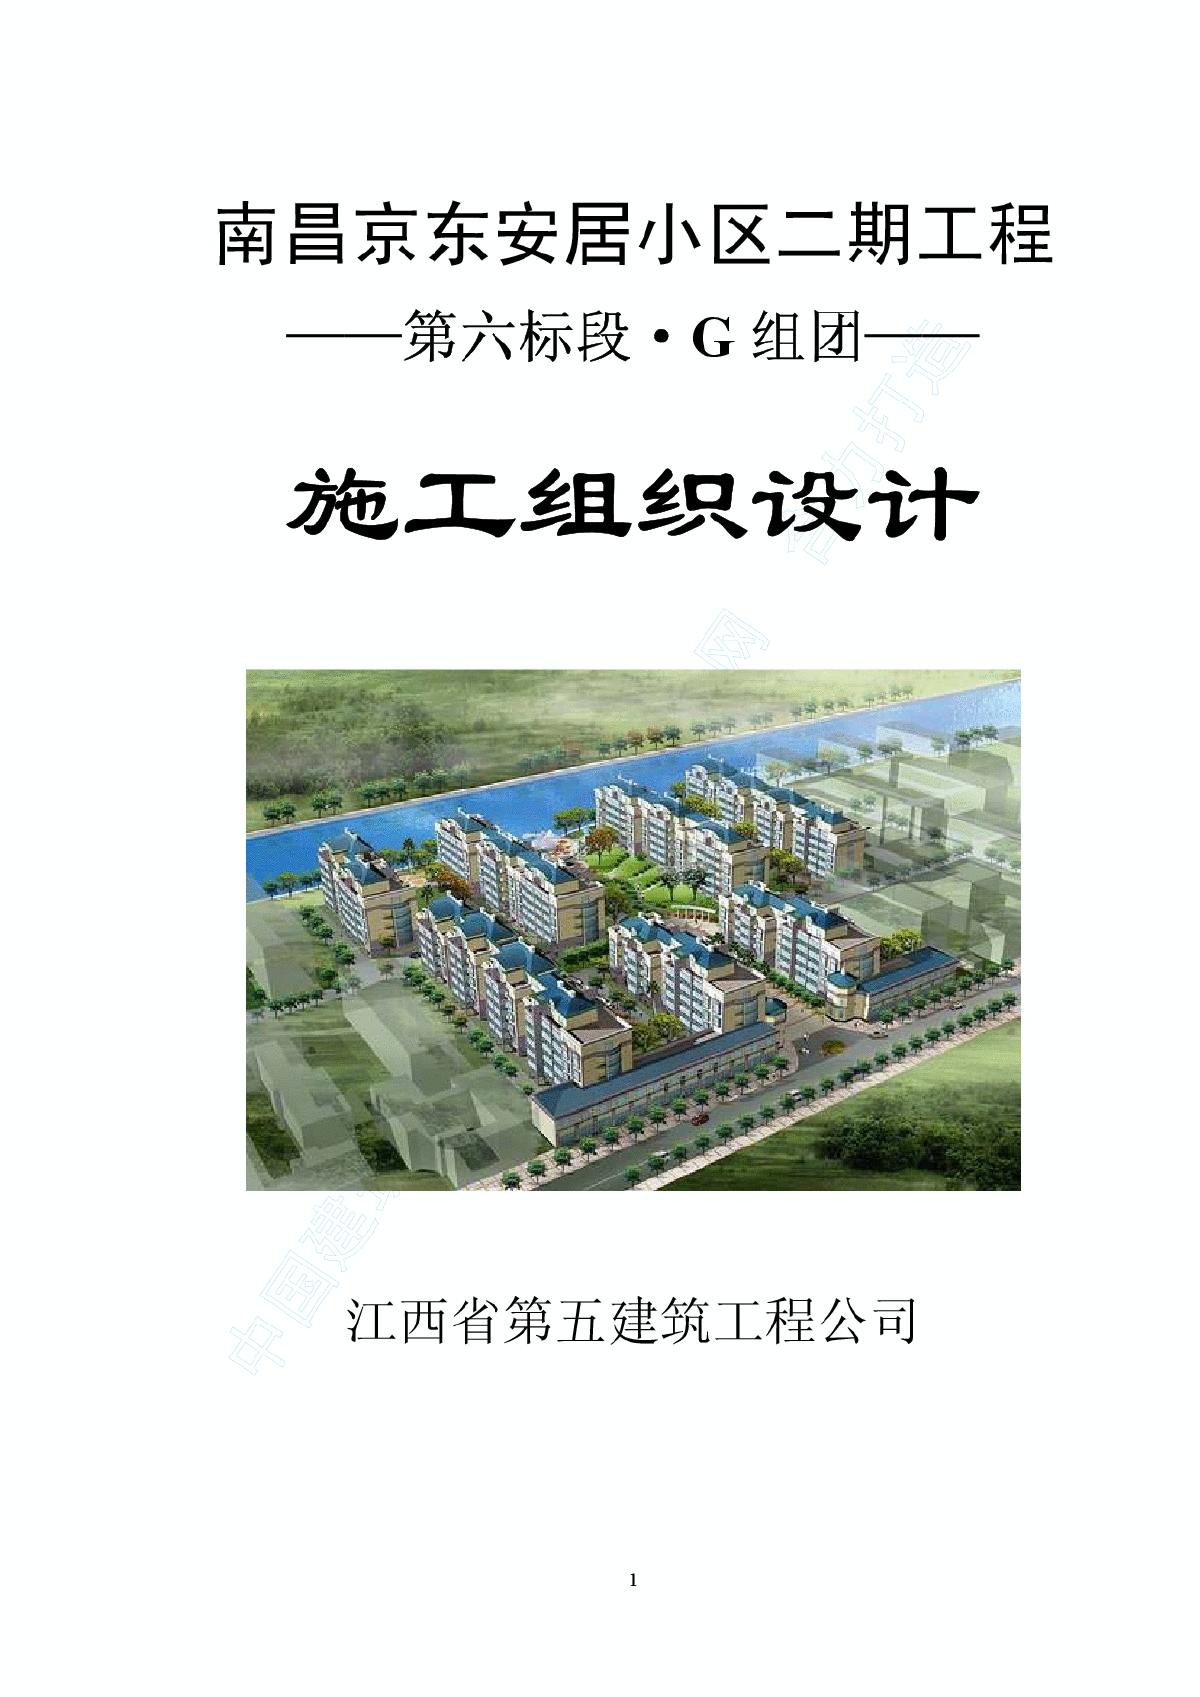 南昌京东安居小区二期工程施工方案